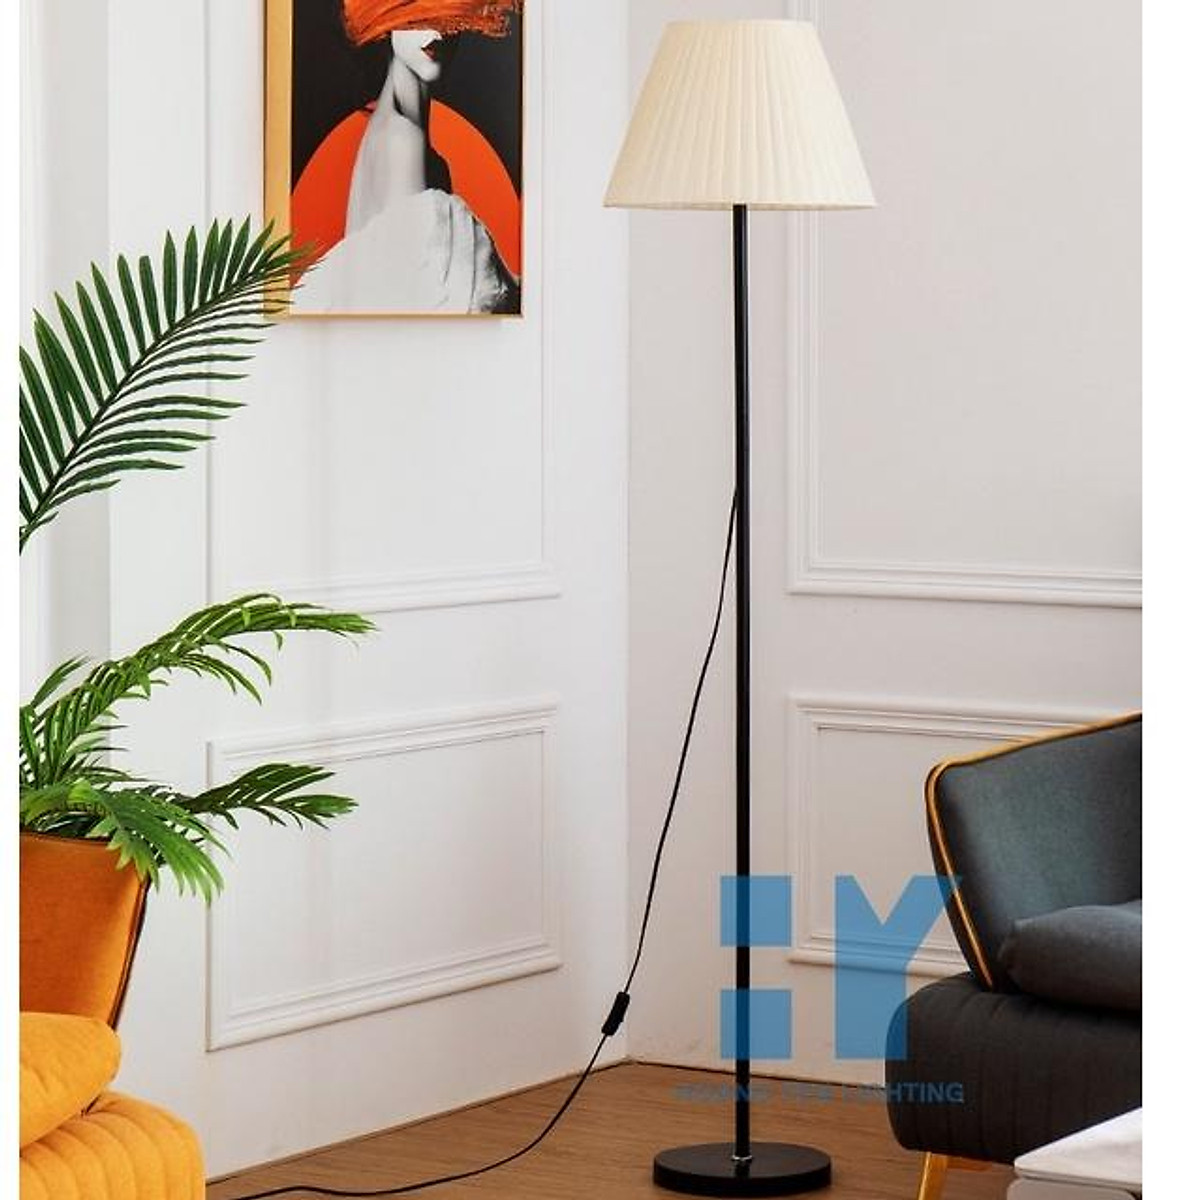 Với đèn cây đứng trang trí nội thất phòng khách, bạn có thể tạo ra không gian sống độc đáo và tiện nghi. Với nhiều kiểu dáng và màu sắc, đèn cây đứng trang trí cho chiếc ghế sofa hoặc bàn phòng khách của bạn một diện mạo mới, tươi trẻ và sang trọng.